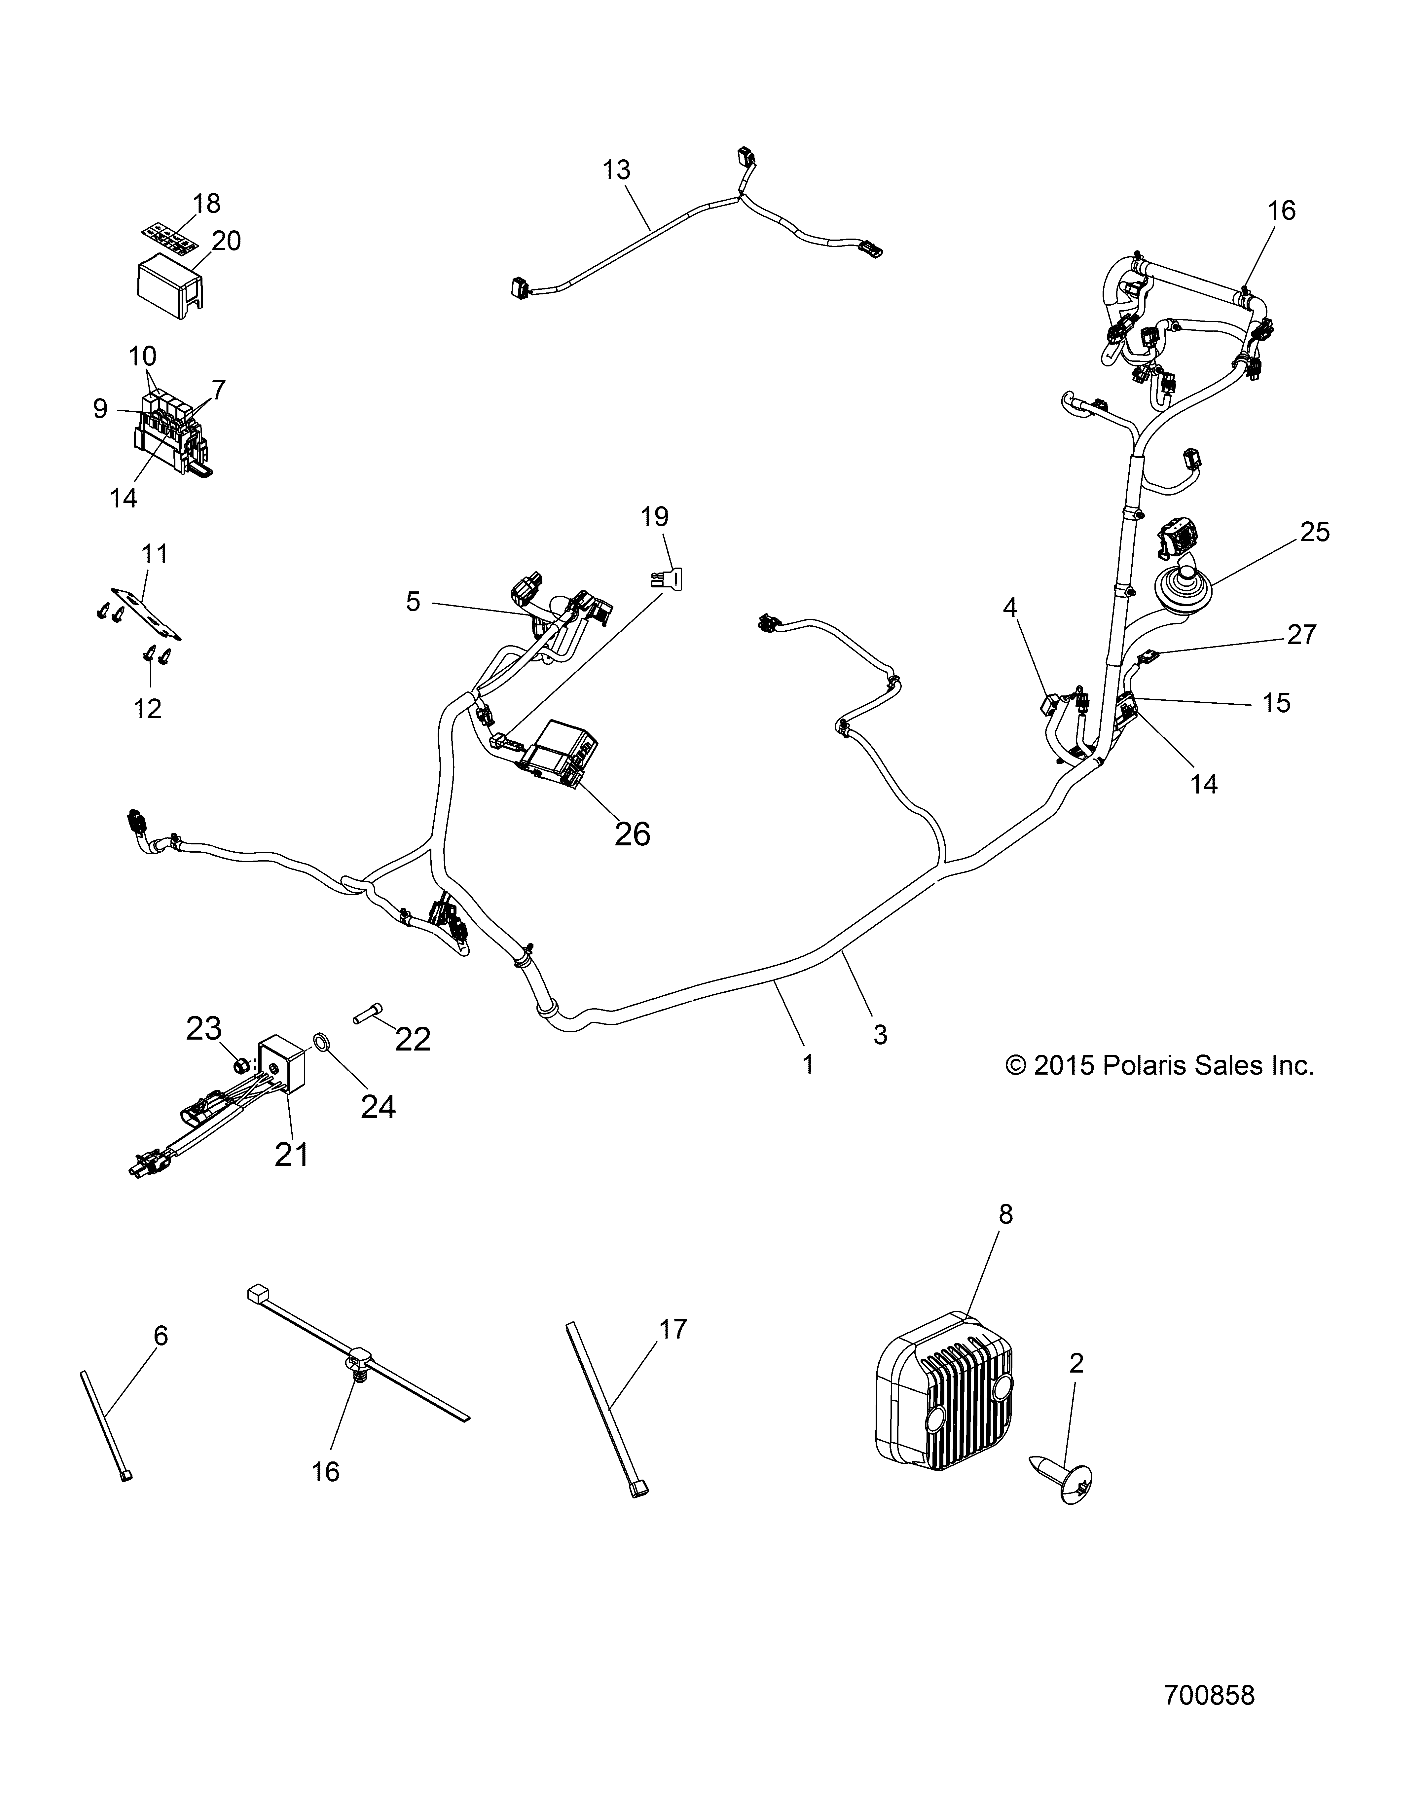 Foto diagrama Polaris que contem a peça 7176911